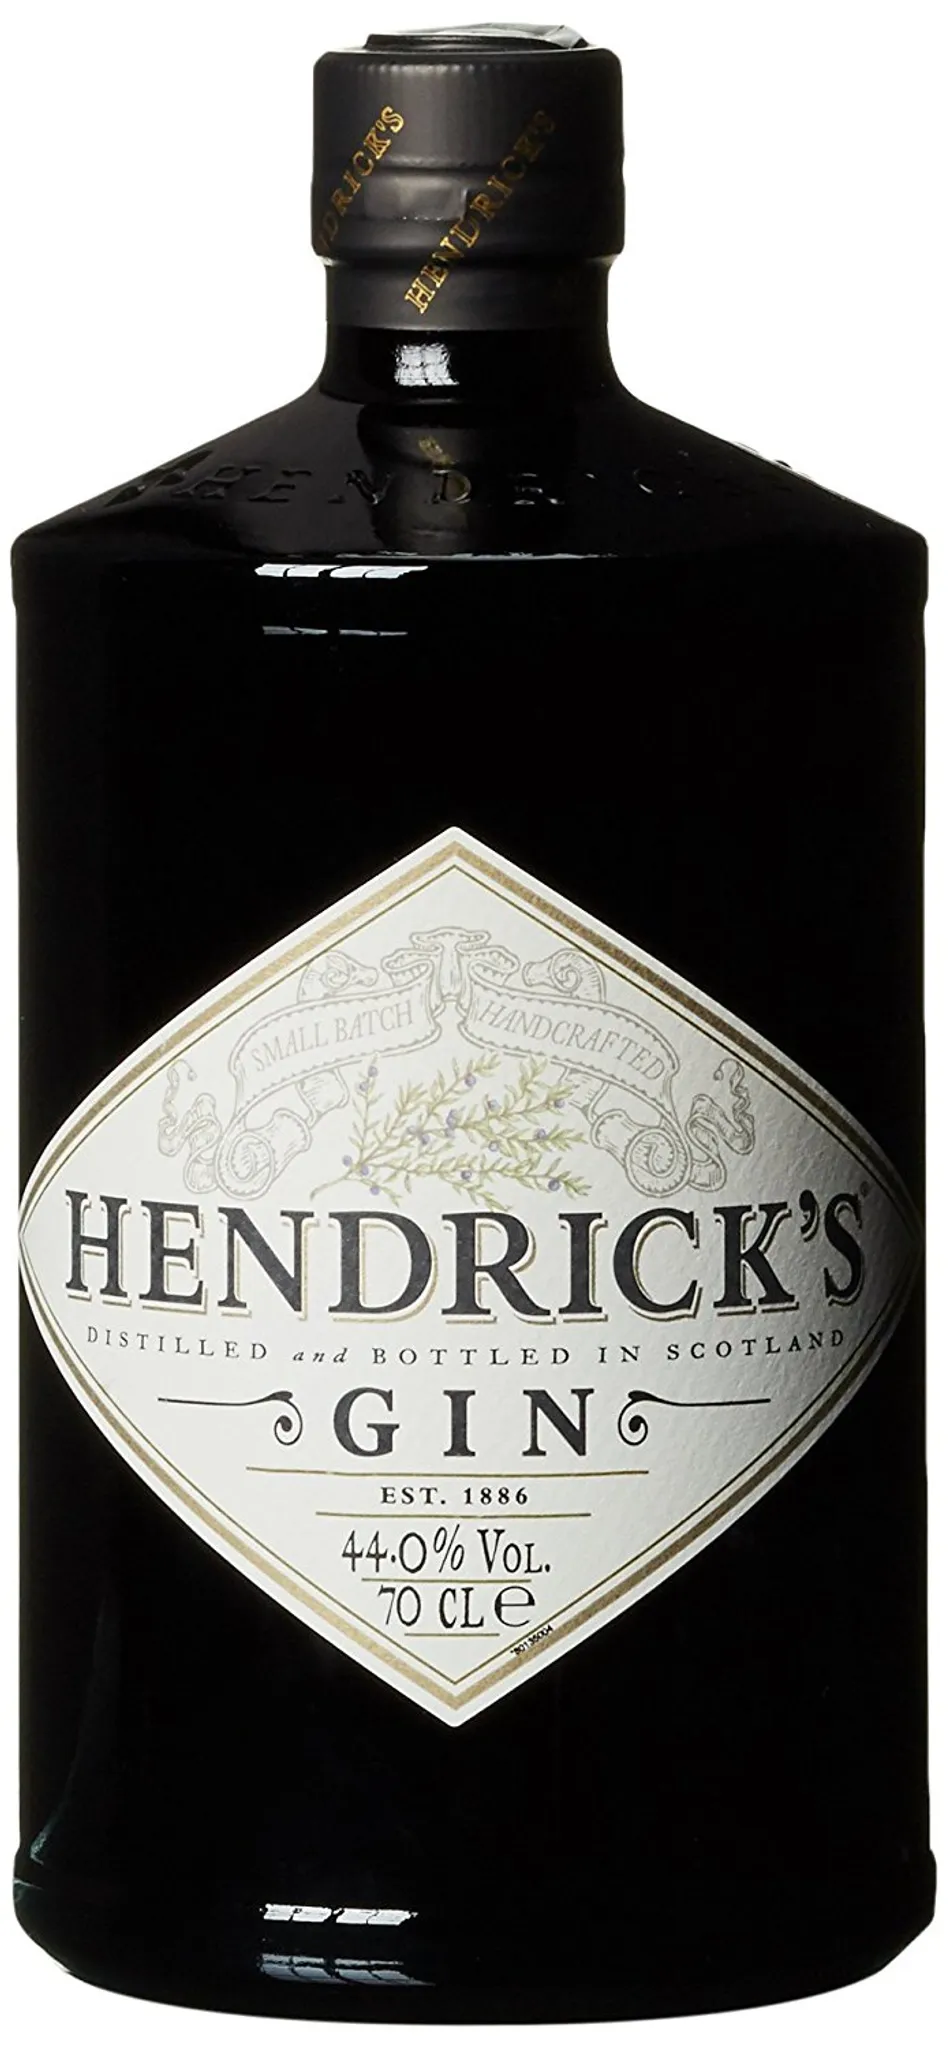 Hendricks Gin Distilled and Bottled in